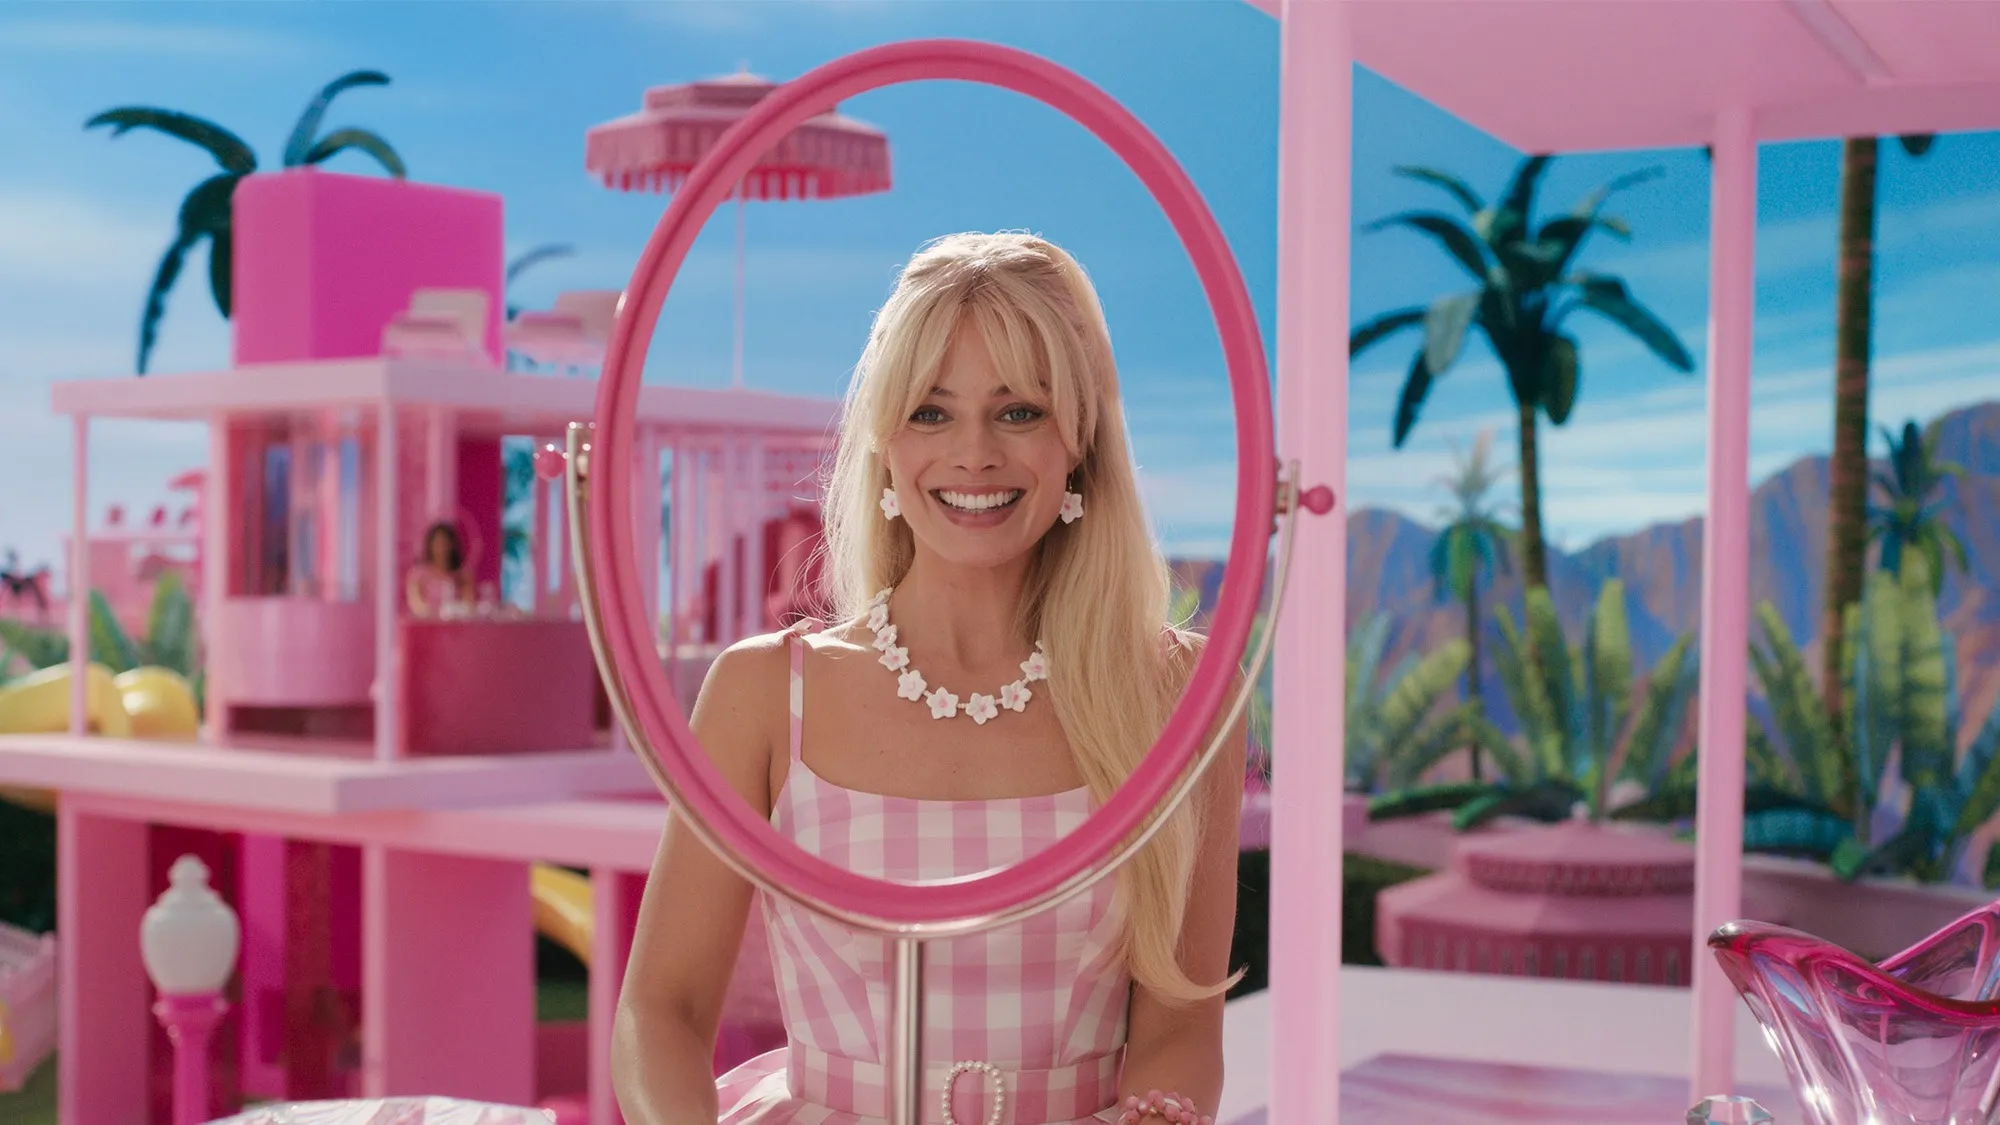 Recensione - Barbie, il nuovo film di Greta Gerwig con Margot Robbie e Ryan Gosling